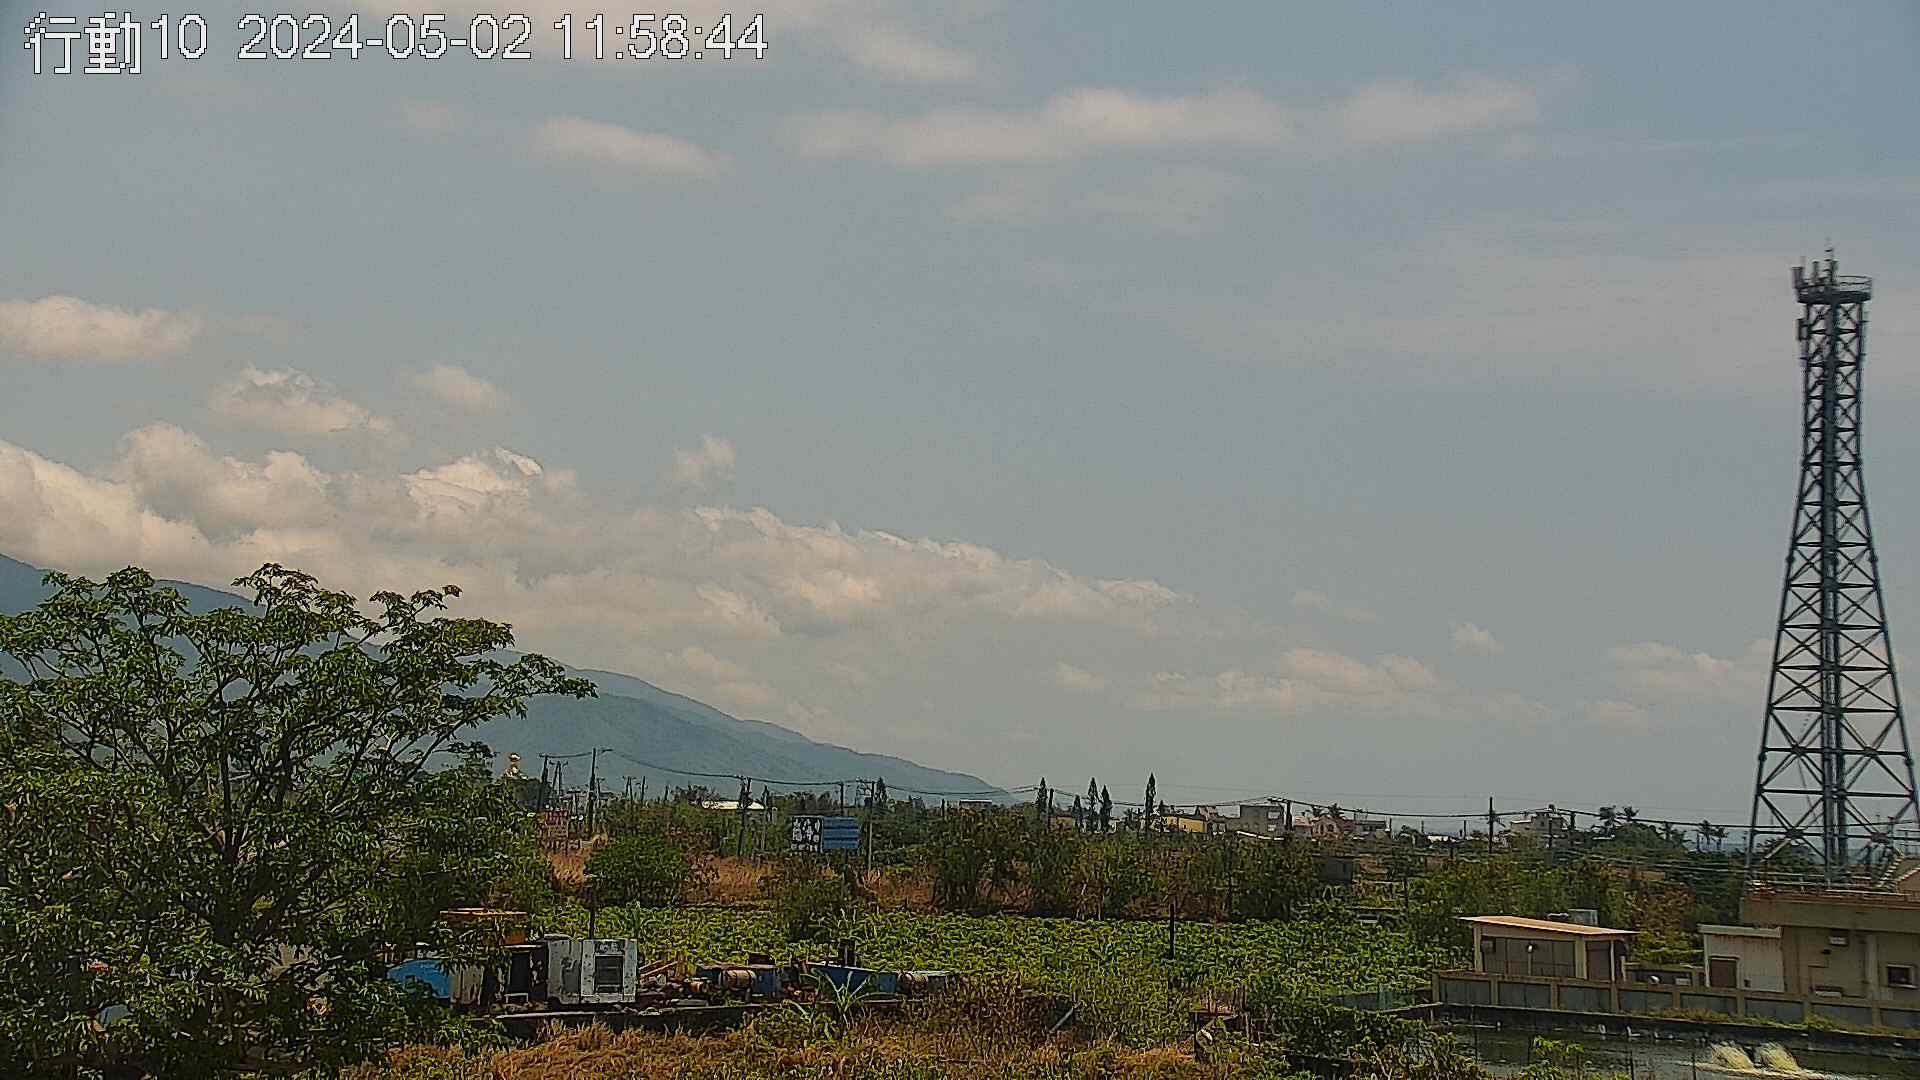 空氣品質監測站 屏東(枋山) 氣溫21.9度